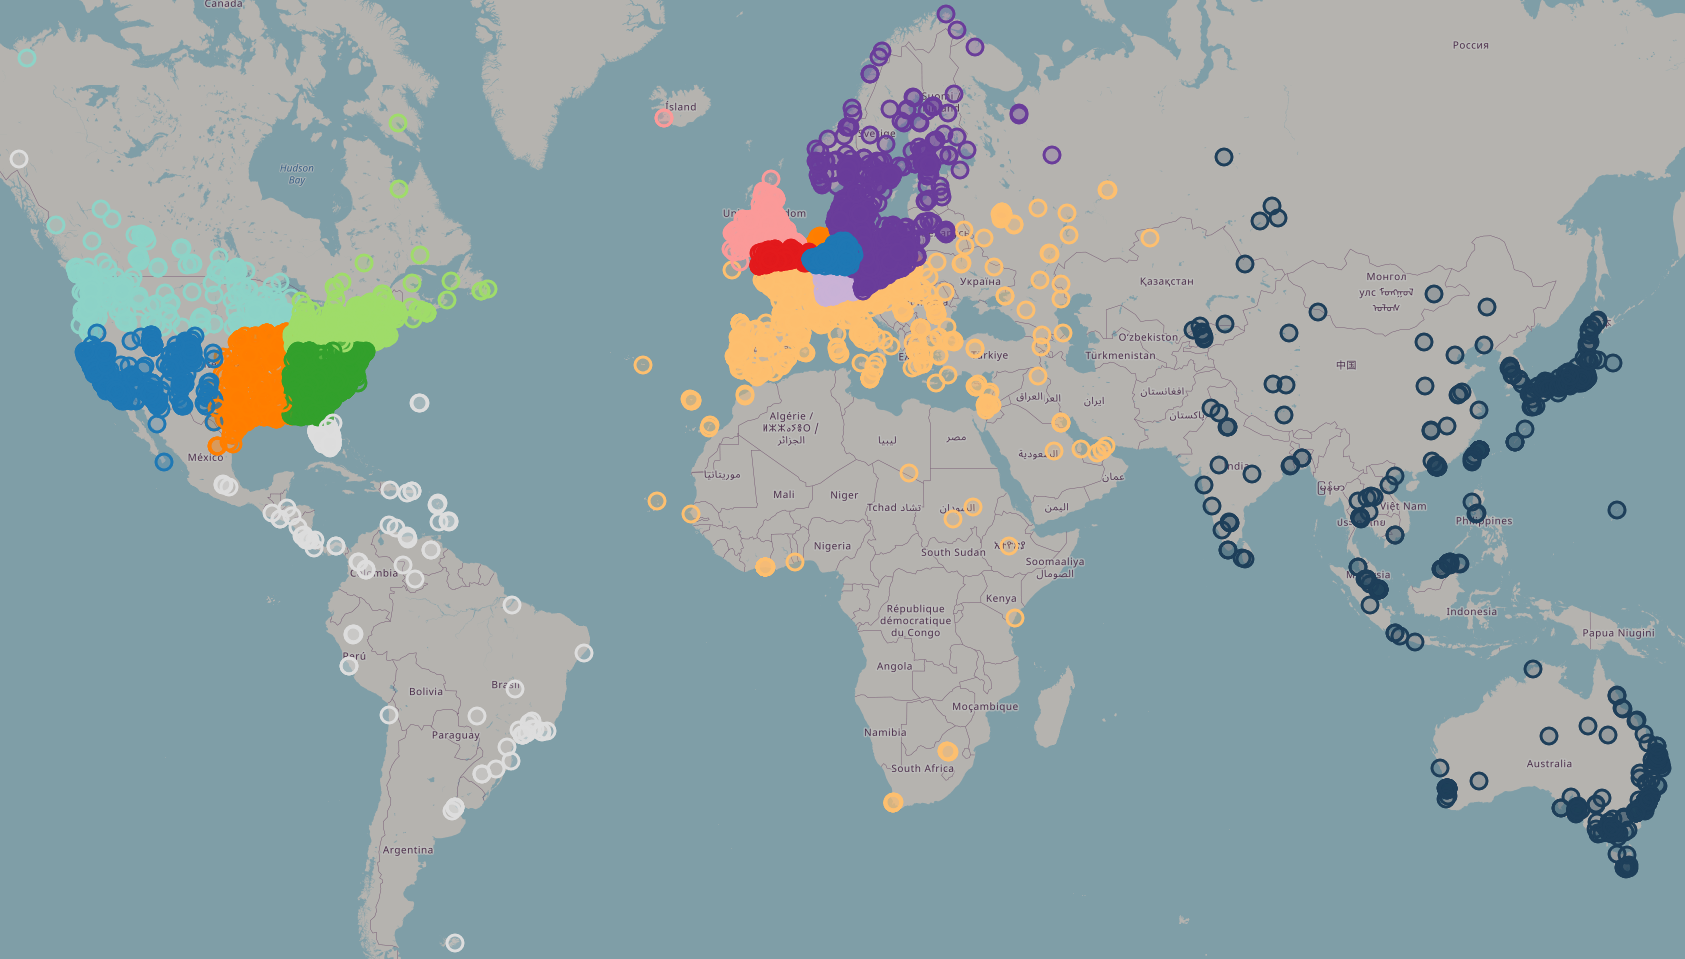 Mapa del món amb un punt per cada ordinador que està connectat a la xarxa. La majoria són a Estats units i Europa, tot i que n'hi ha prous a l'est d'Austràlia i Japó